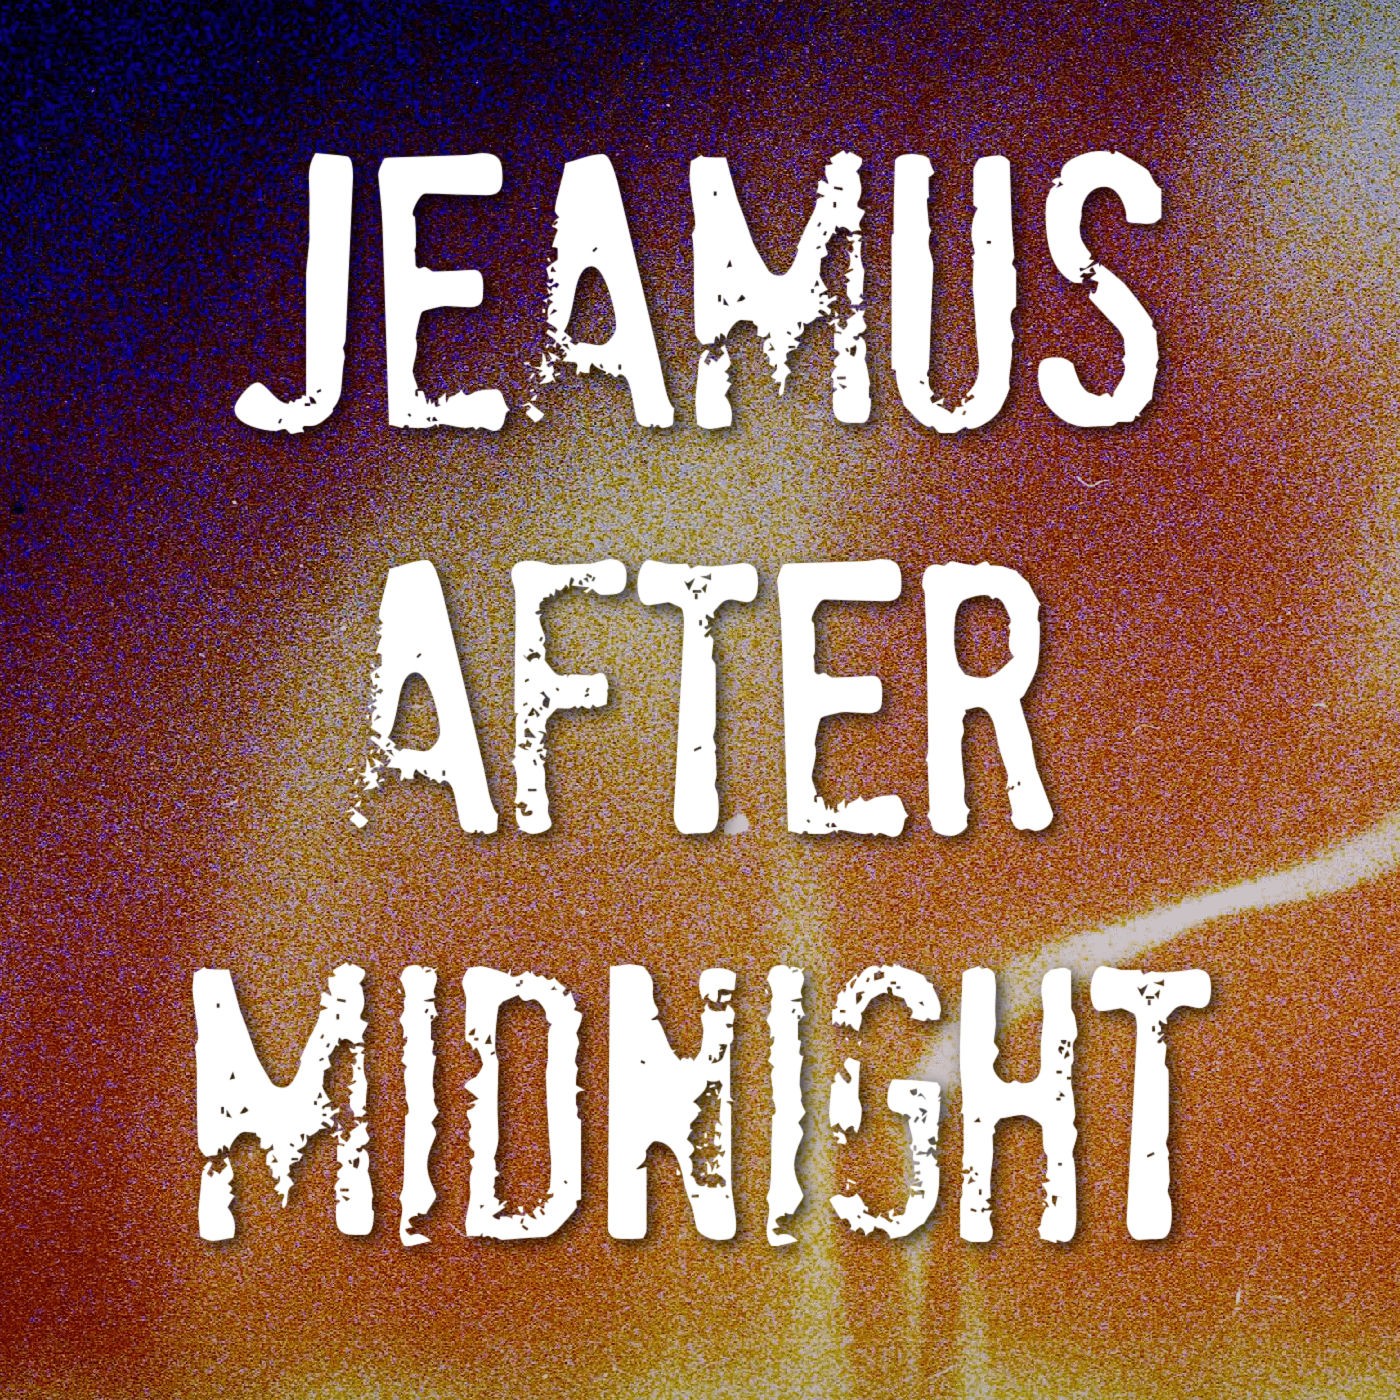 Jeamus After Midnight